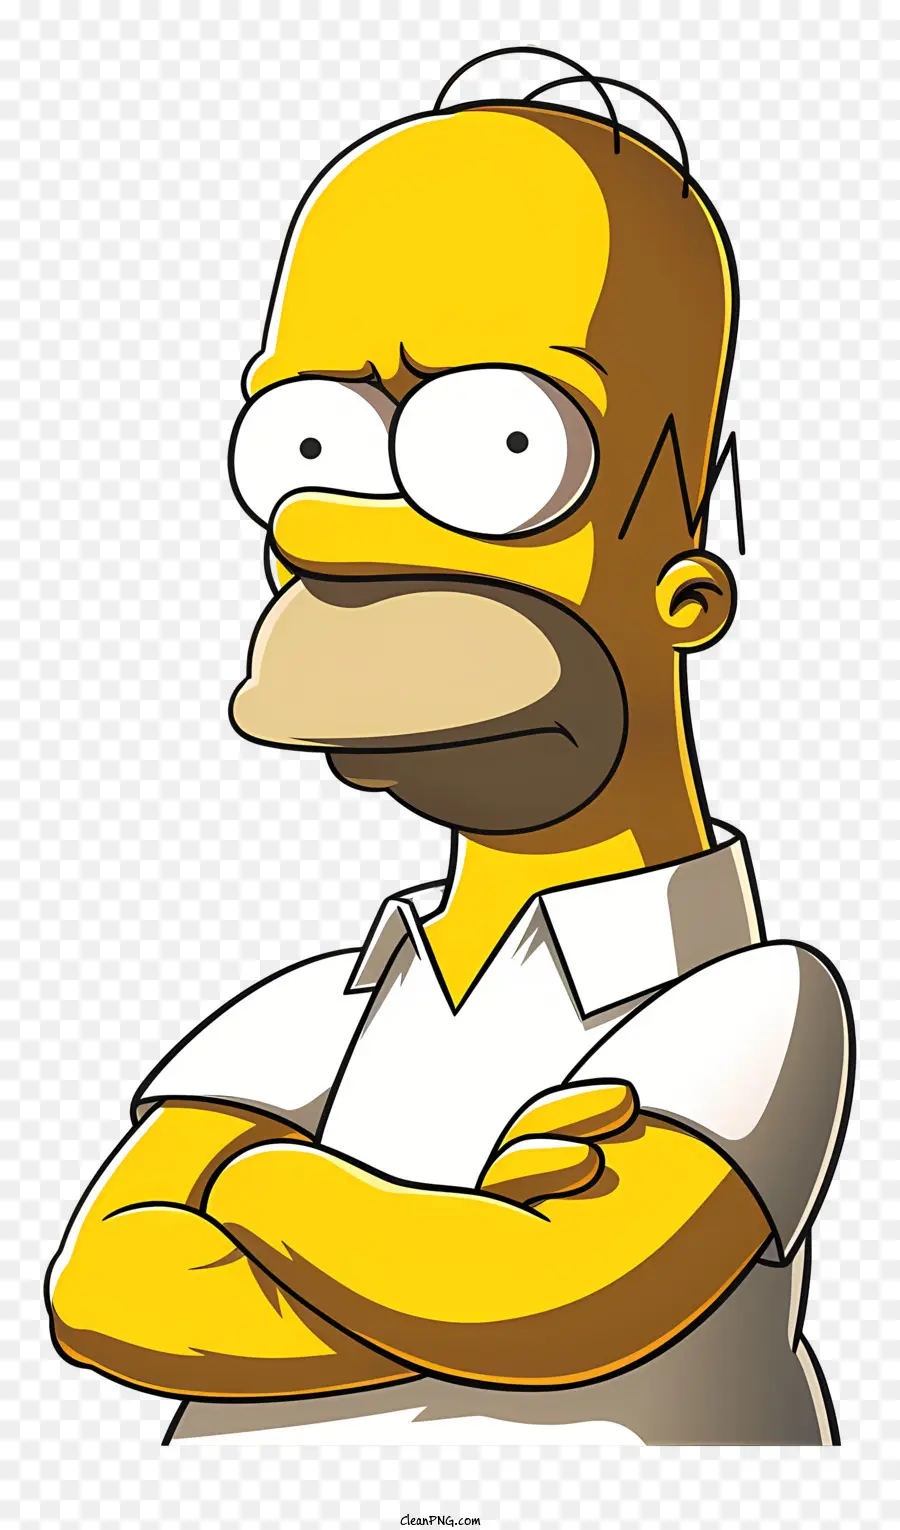 Simpsons the Simpsons Cartoon Character Serious Expression Cross ha incrociato le braccia - Personaggio di cartoni animati serio di 